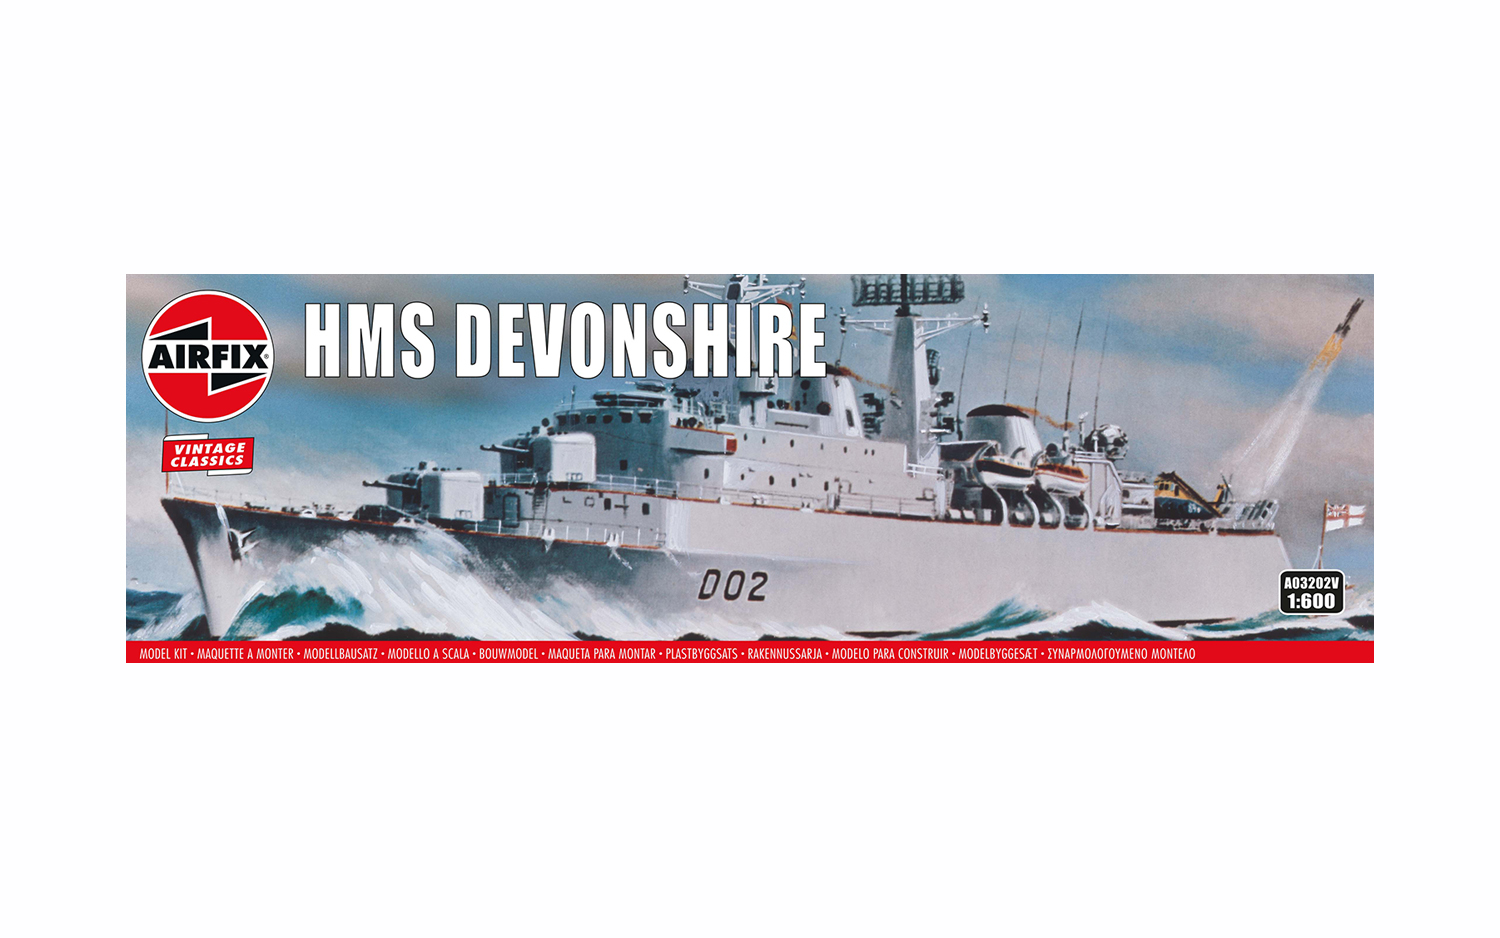 Airfix 03202 HMS Devonshire Vintage Classics